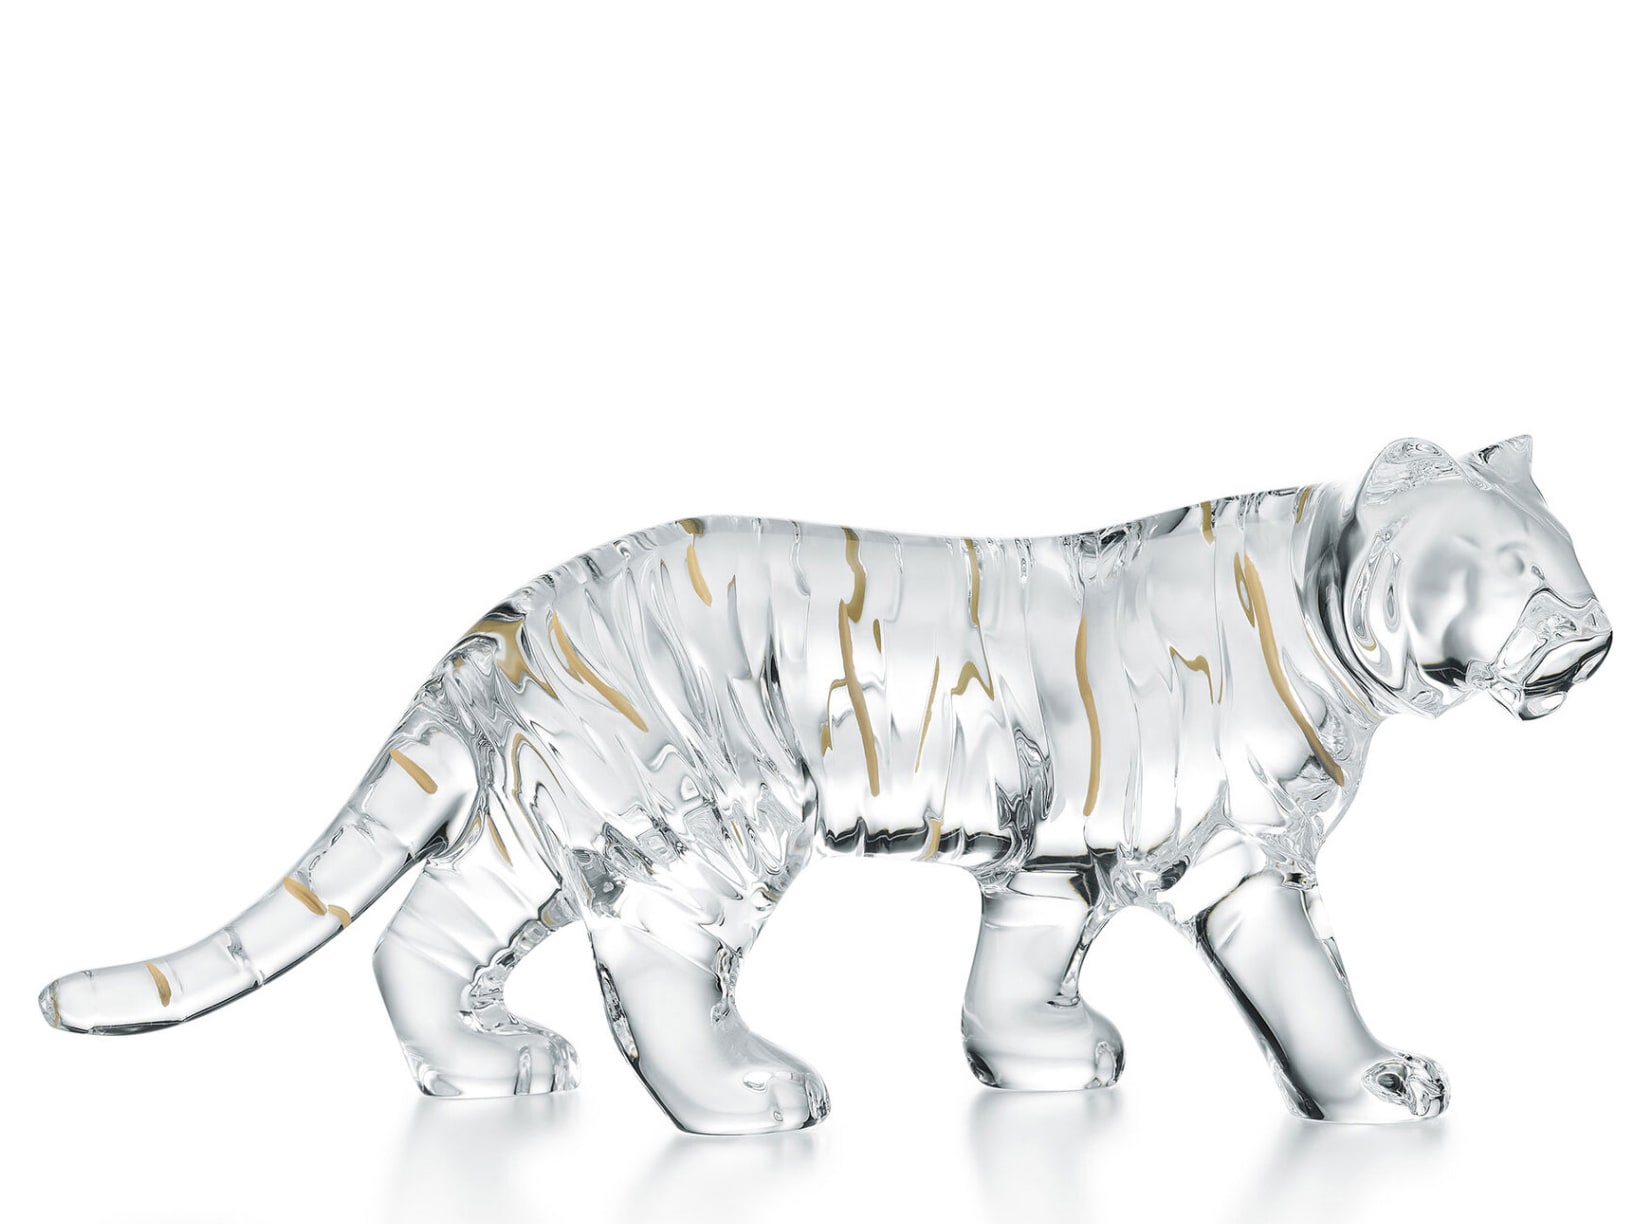 Baccarat. Scultura in cristallo per celebrare il capodanno cinese e l’anno della Tigre, creato da Allison Hawkes.